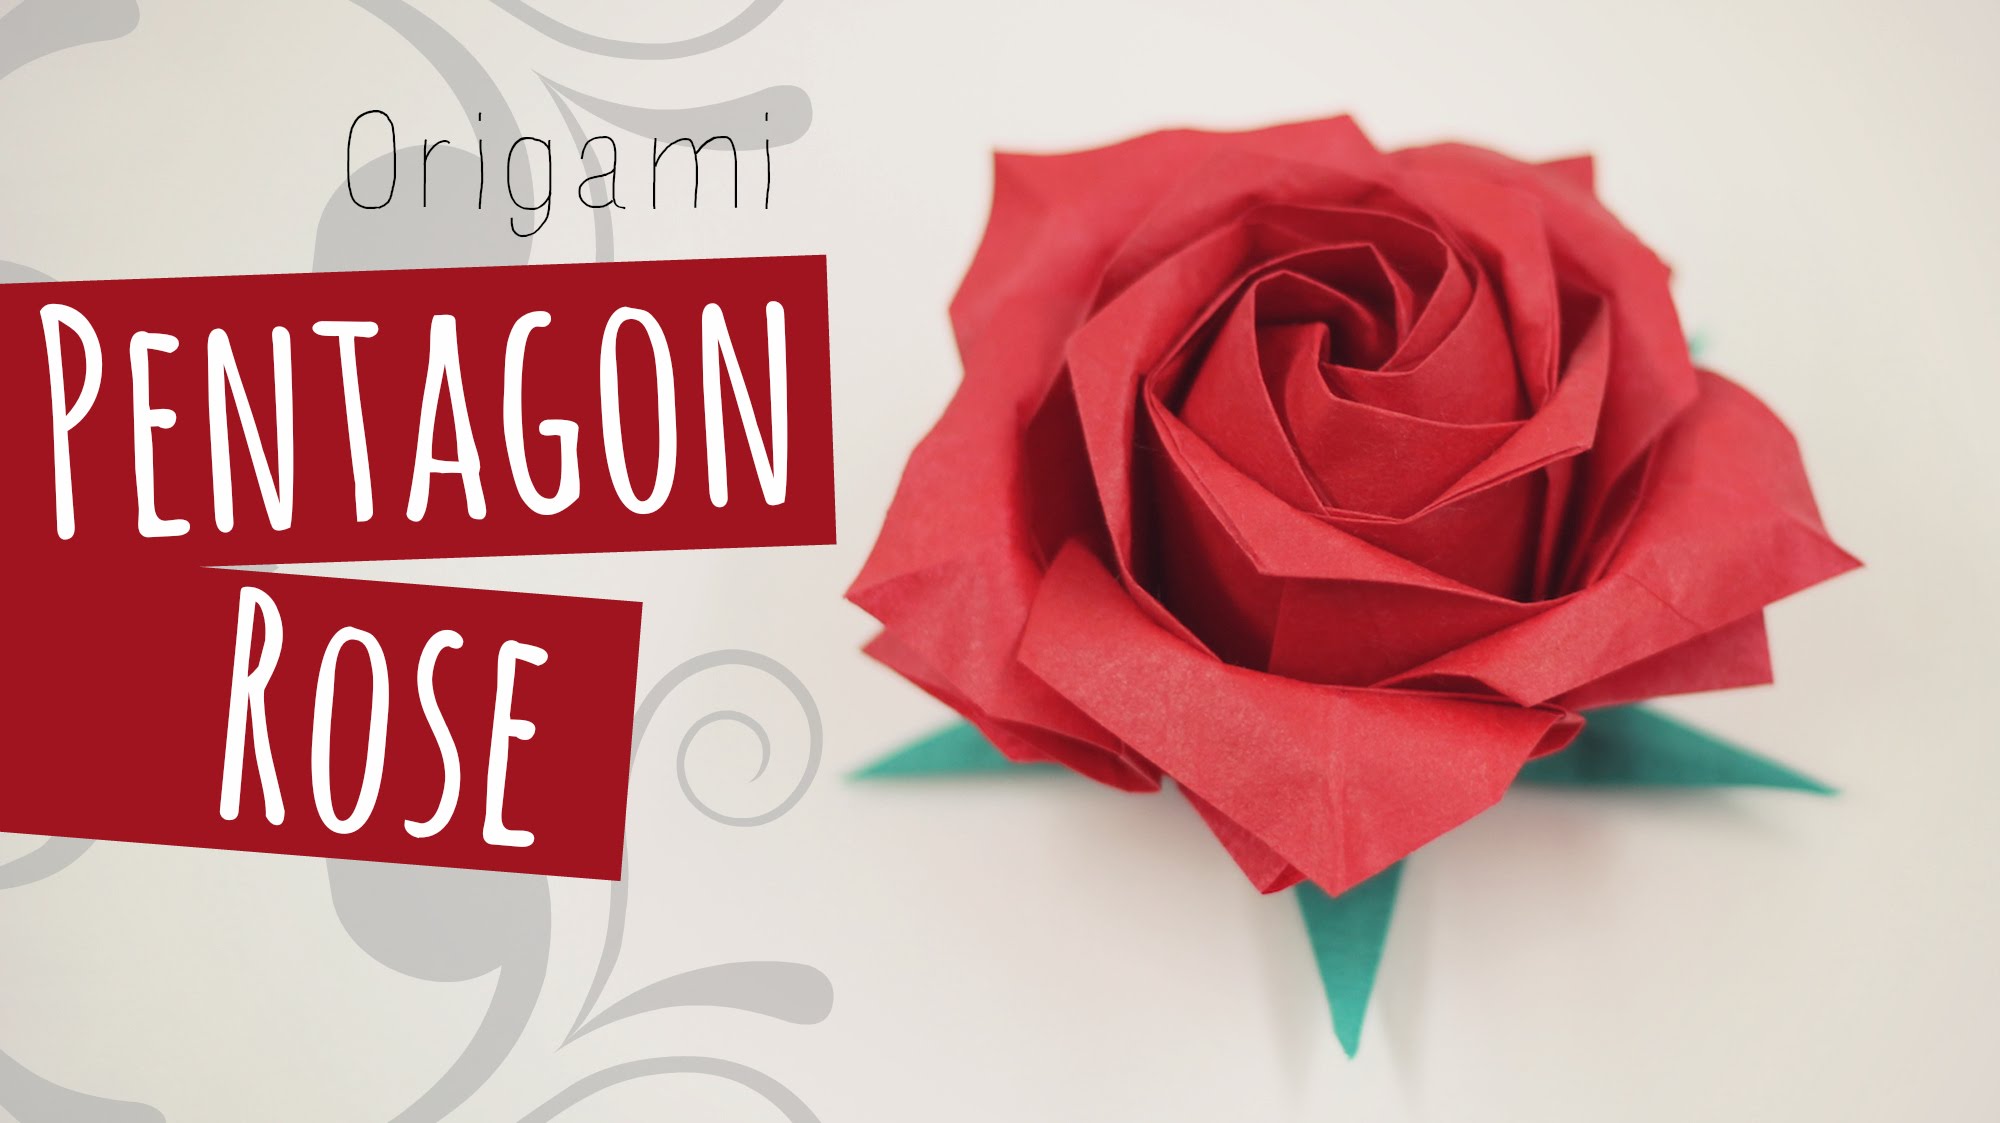 Origami Pentagon Rose (Naomiki Sato) 折り紙バラ - YouTube